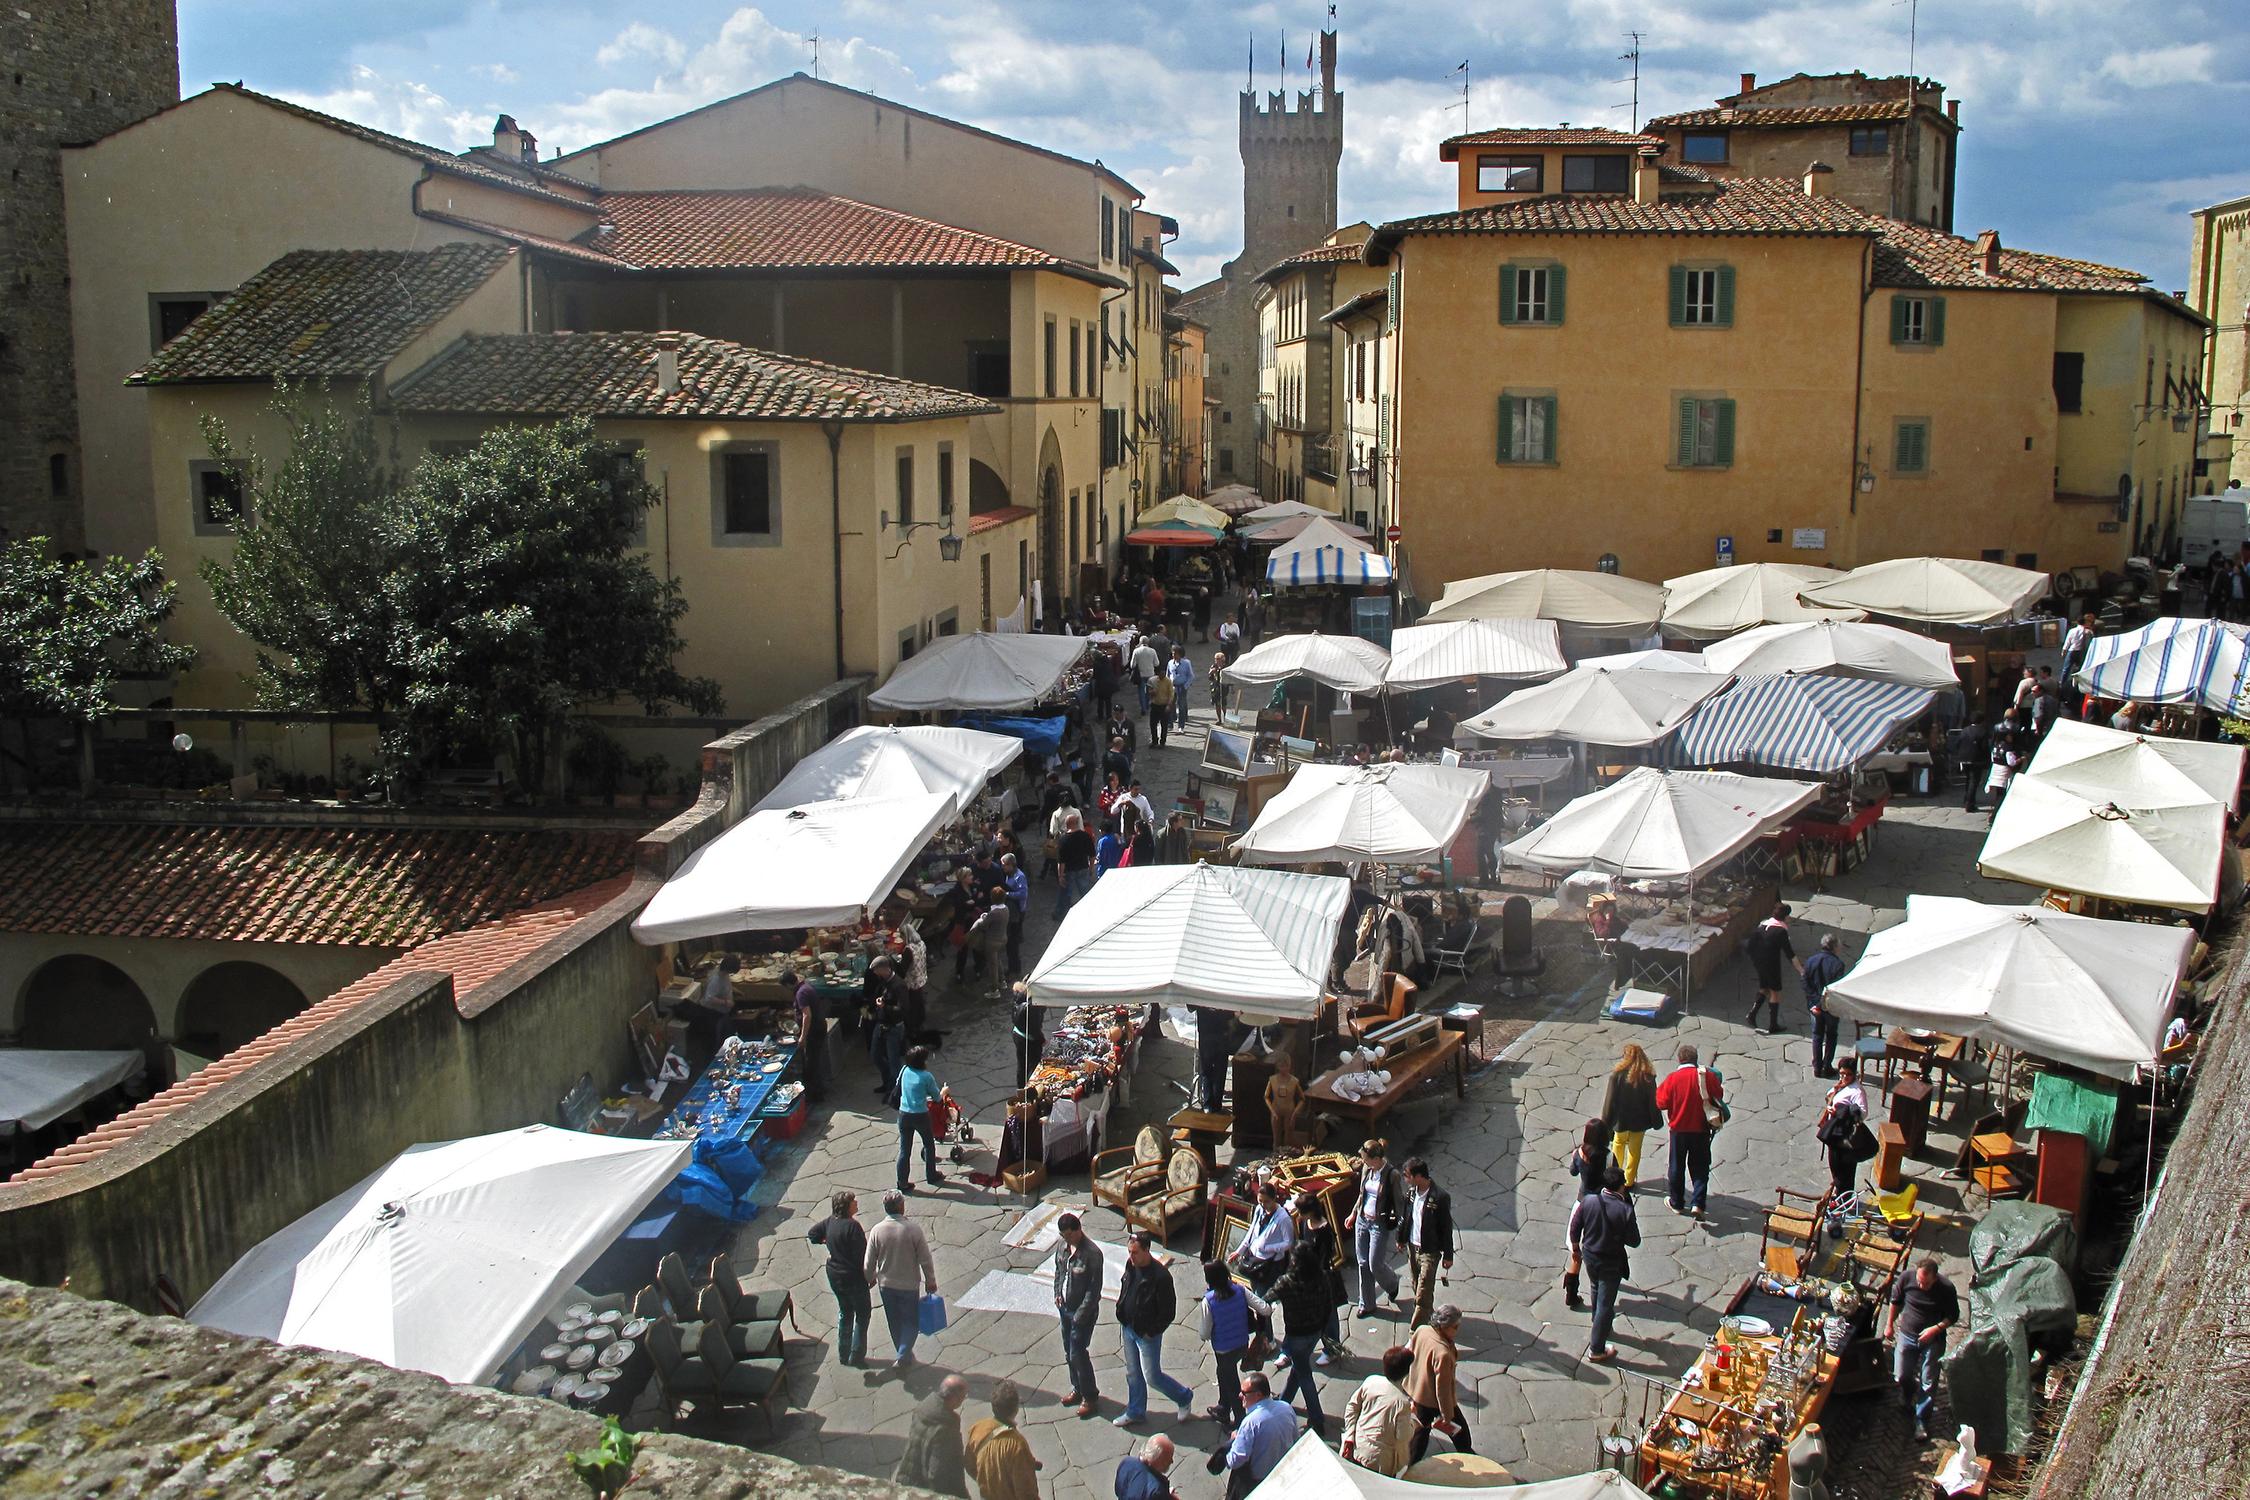 Eventi in Valdichiana:  Foiano della Chiana, Arezzo, Cortona, Siena